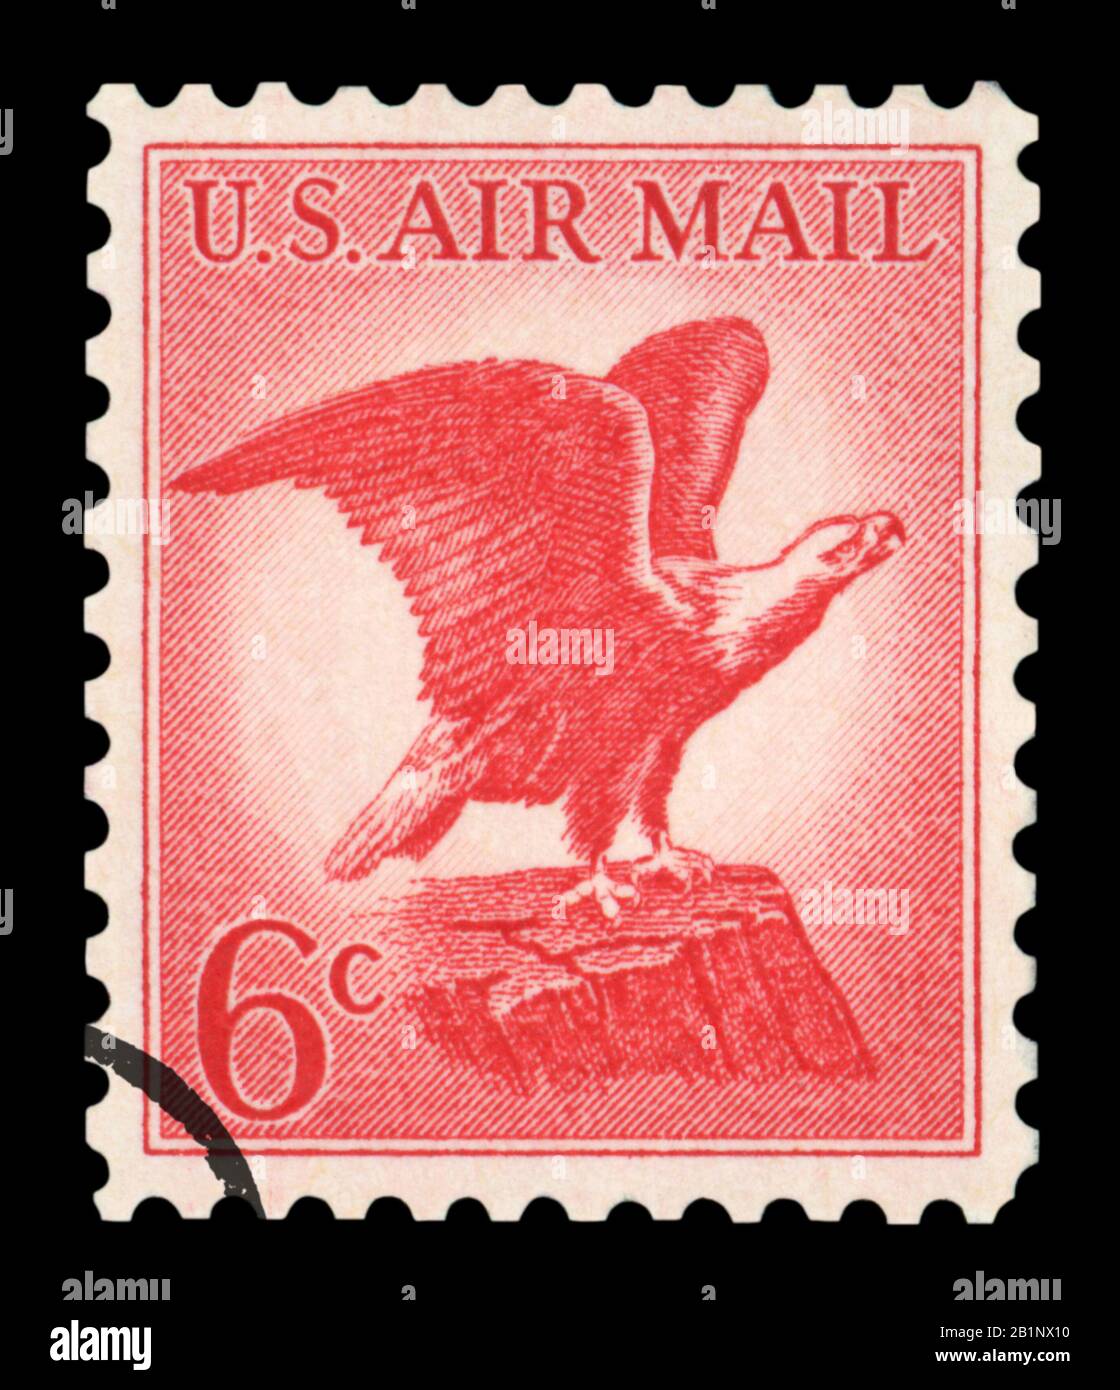 Stati Uniti d'AMERICA - CIRCA 1963: Un francobollo usato della posta aerea degli Stati Uniti, con un'illustrazione del Bald Eagle iconico, circa 1963. Foto Stock